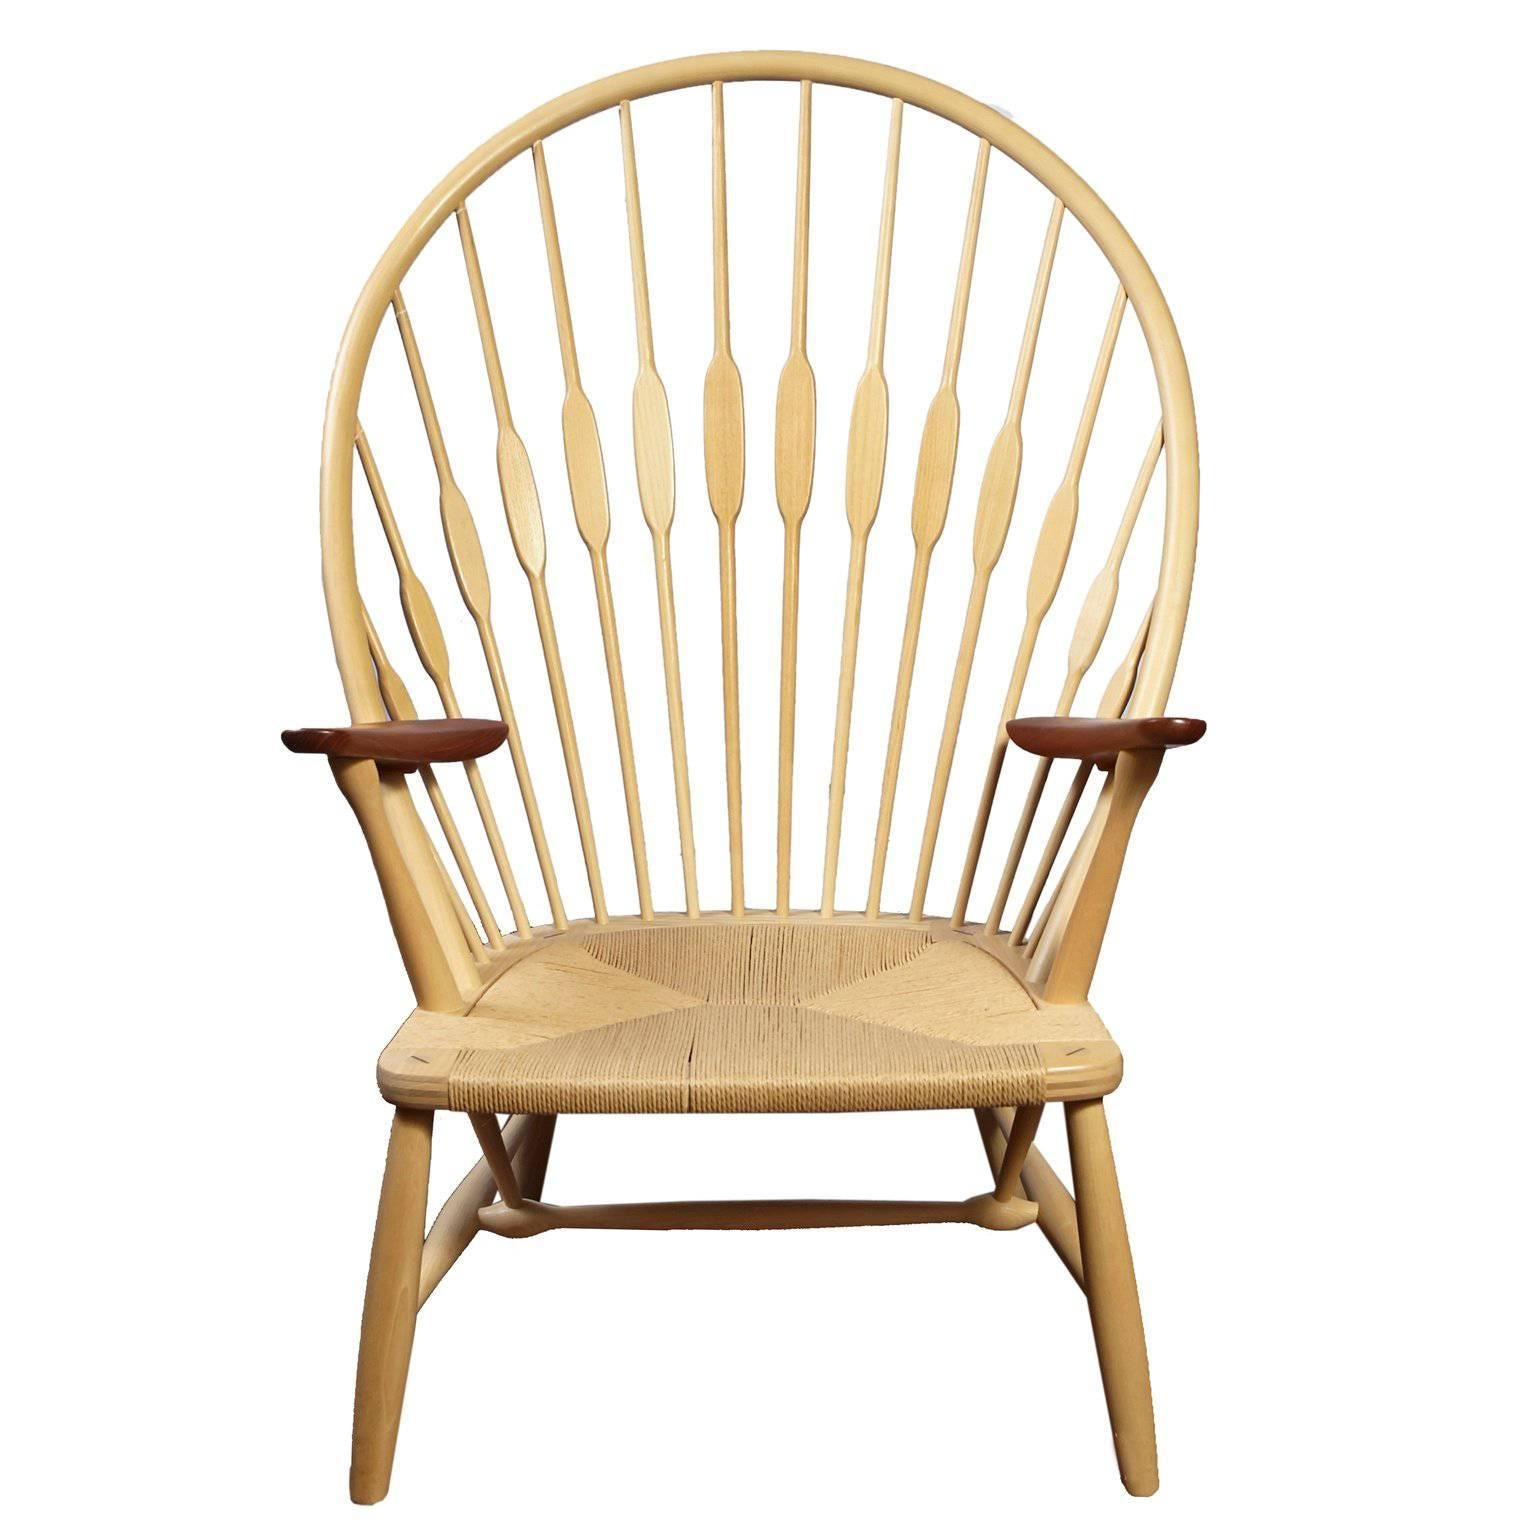 Hans Wegner "Peacock Chair" For Sale